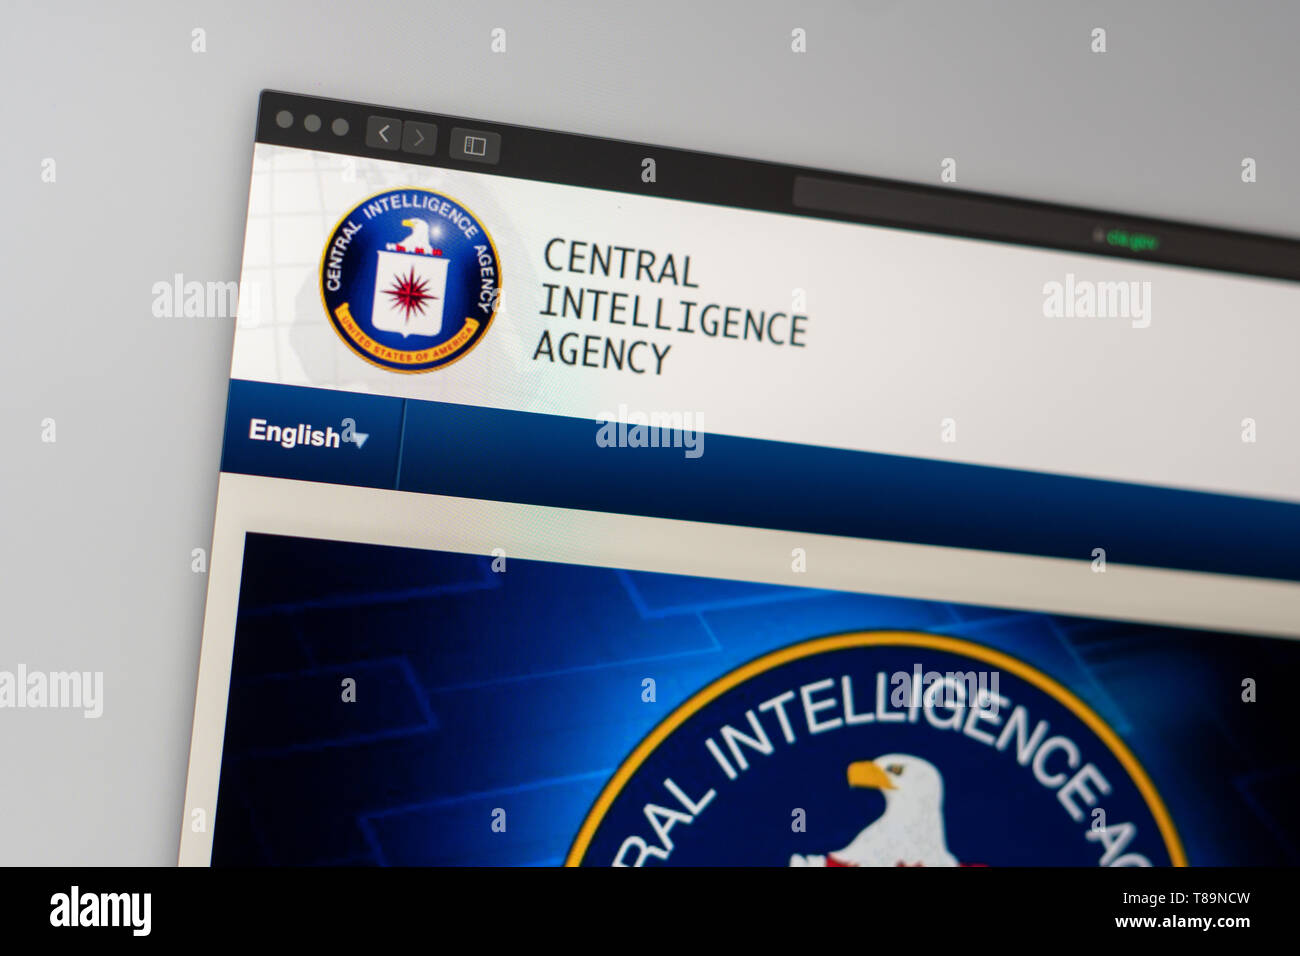 Central Intelligence Agency accueil du site. Close up de logo de l'ICA. Peut être utilisé comme illustration pour les médias ou d'autres sites web. Banque D'Images